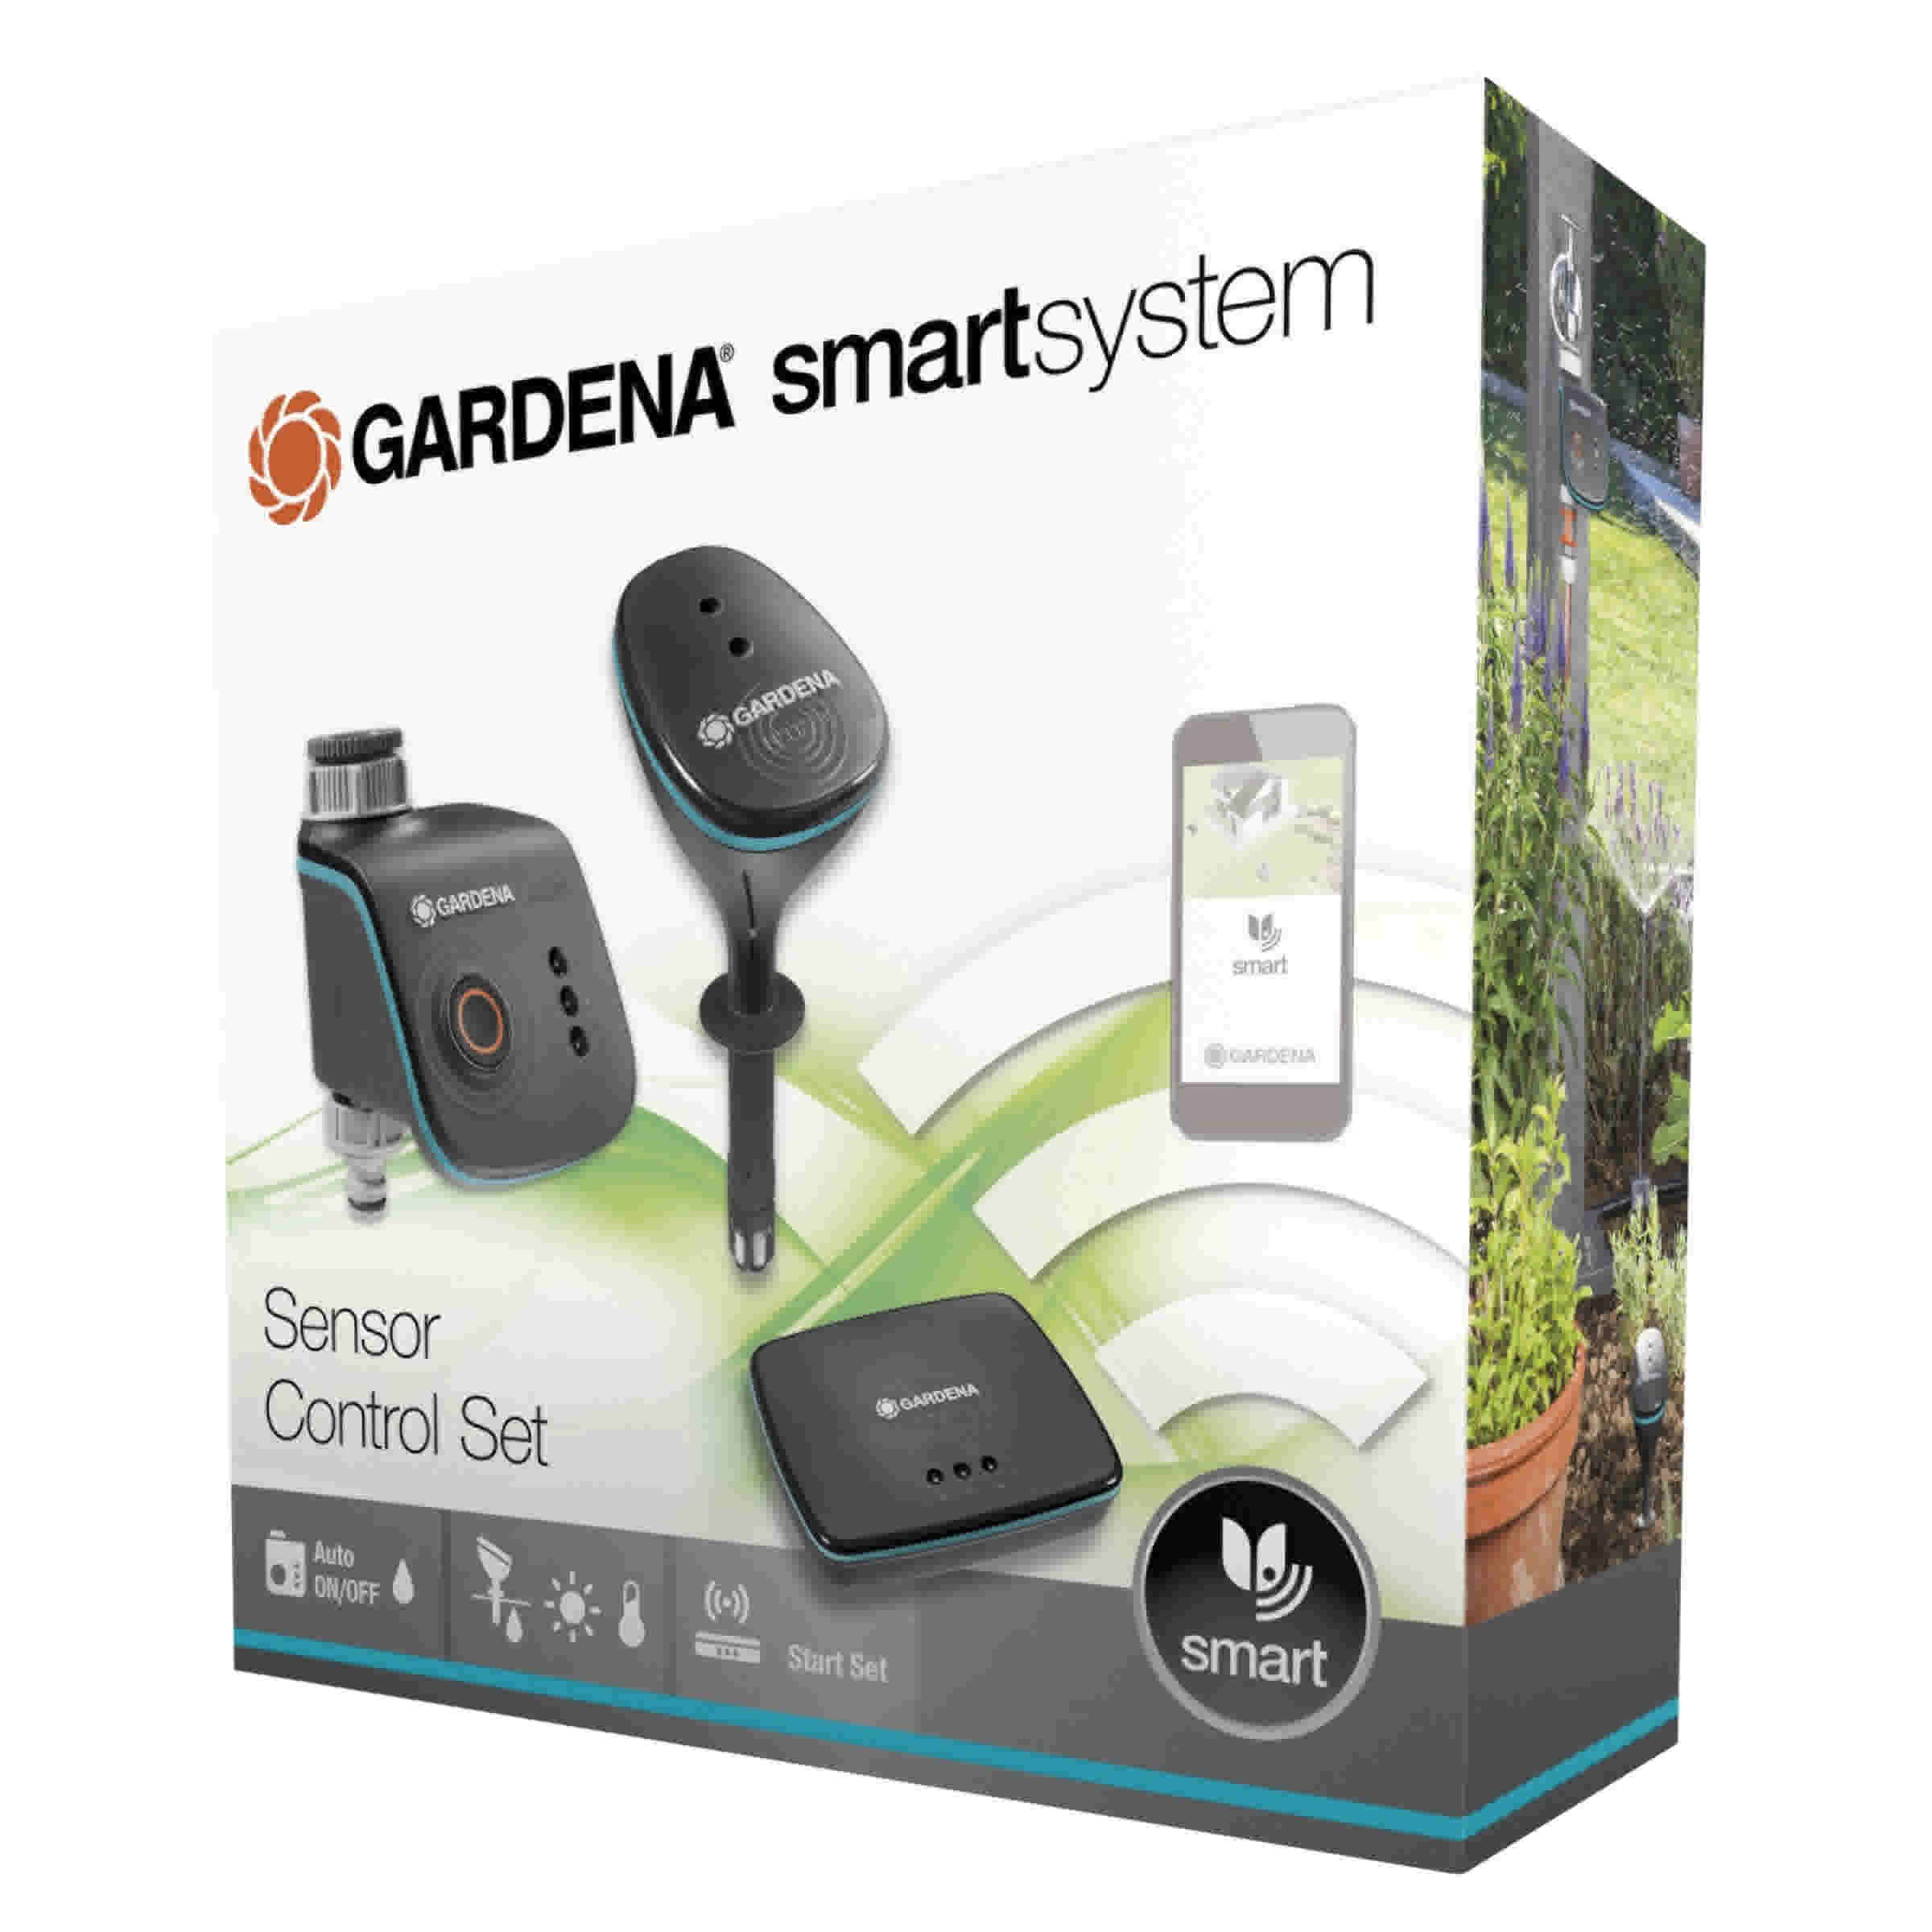 Gardena Smart Sensor Control Set